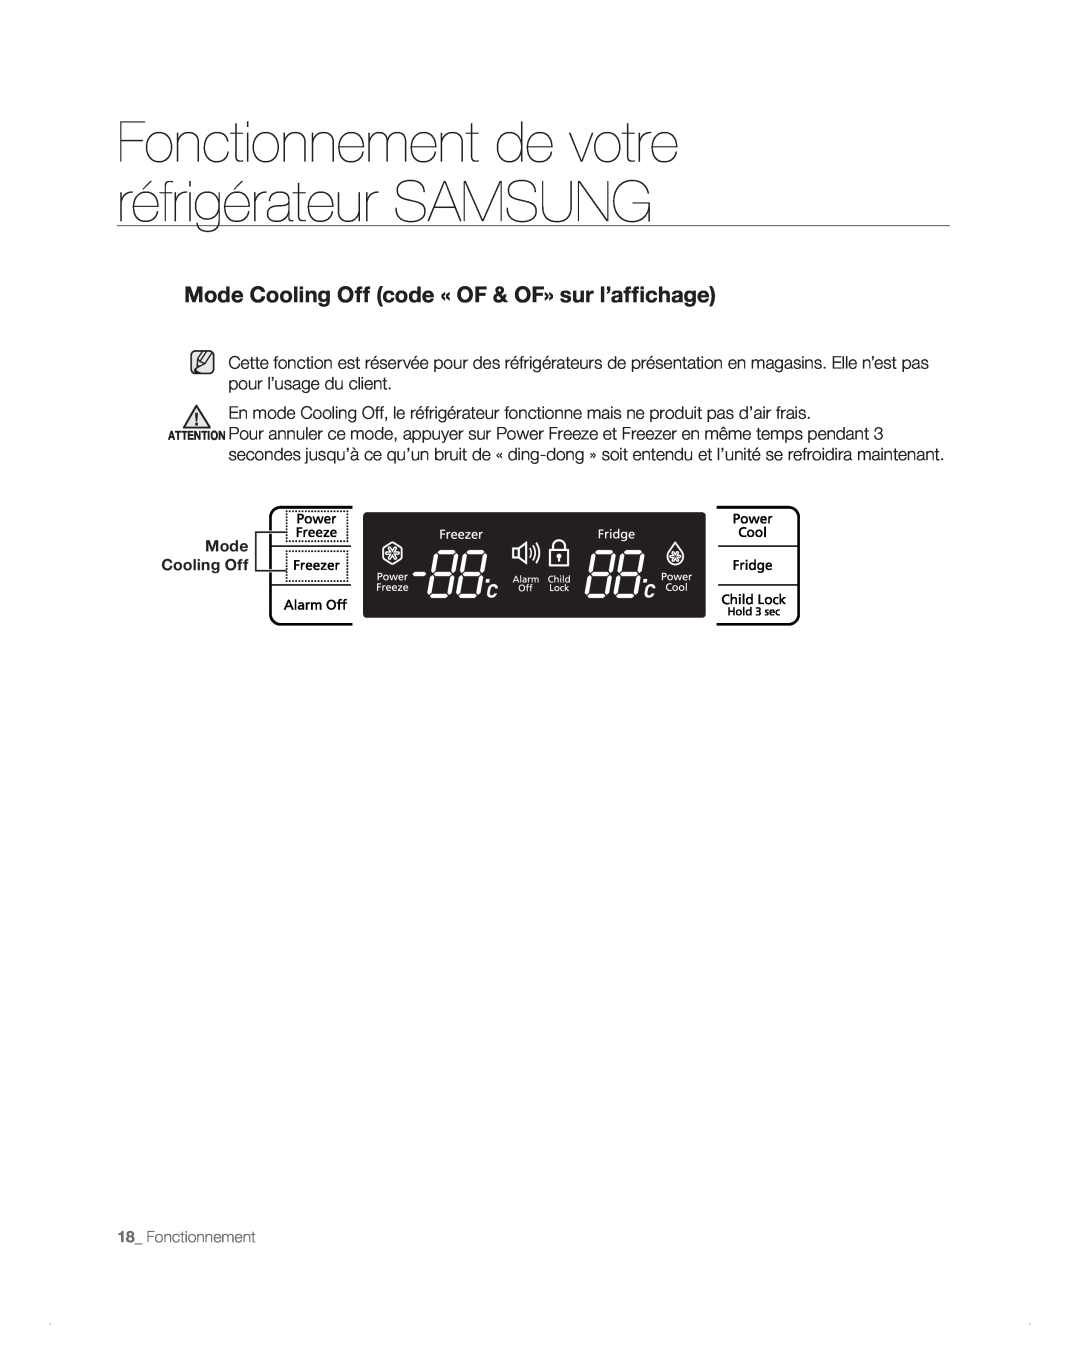 Samsung RB214AB, RB194AB Mode Cooling Off code « OF & OF» sur l’affichage, Fonctionnement de votre réfrigérateur SAMSUNG 